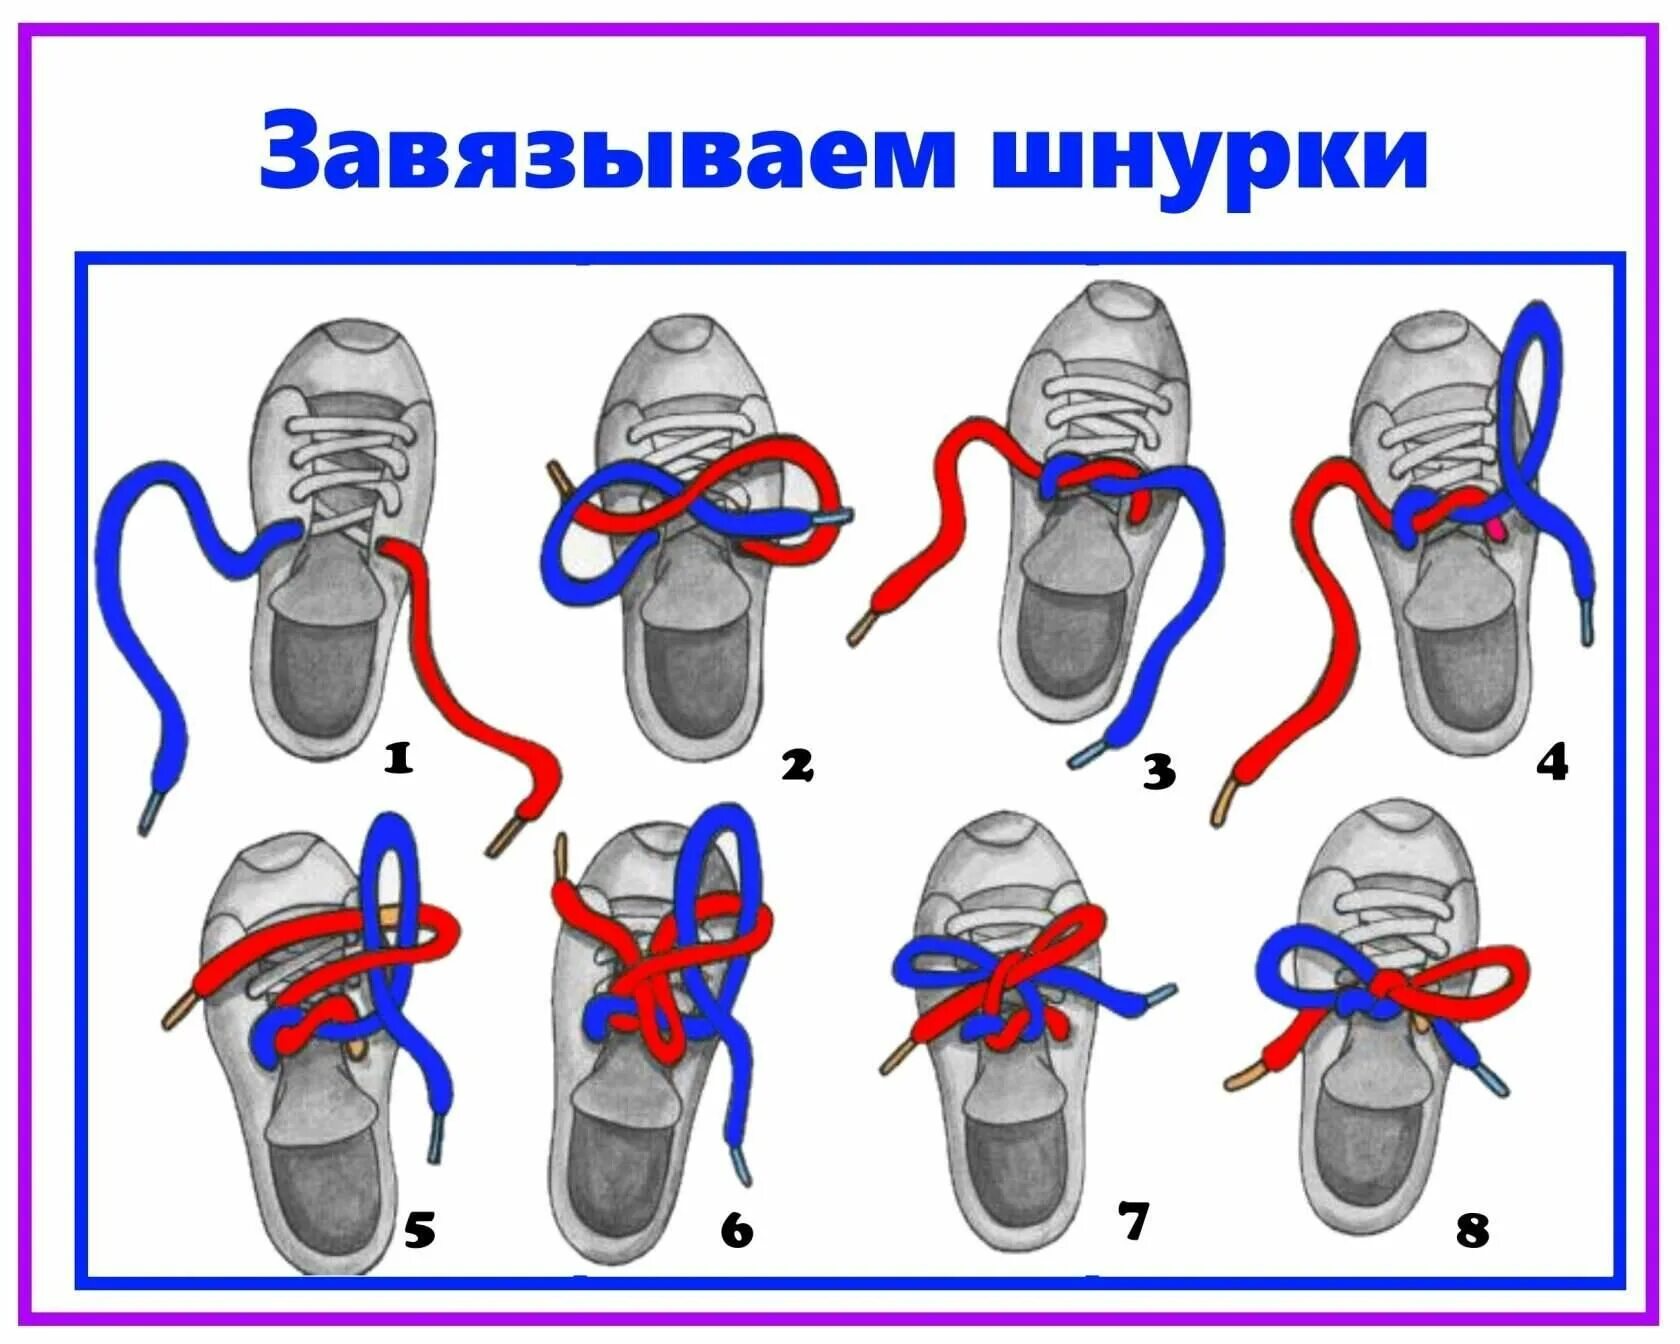 Как завязывать шнурки поэтапно